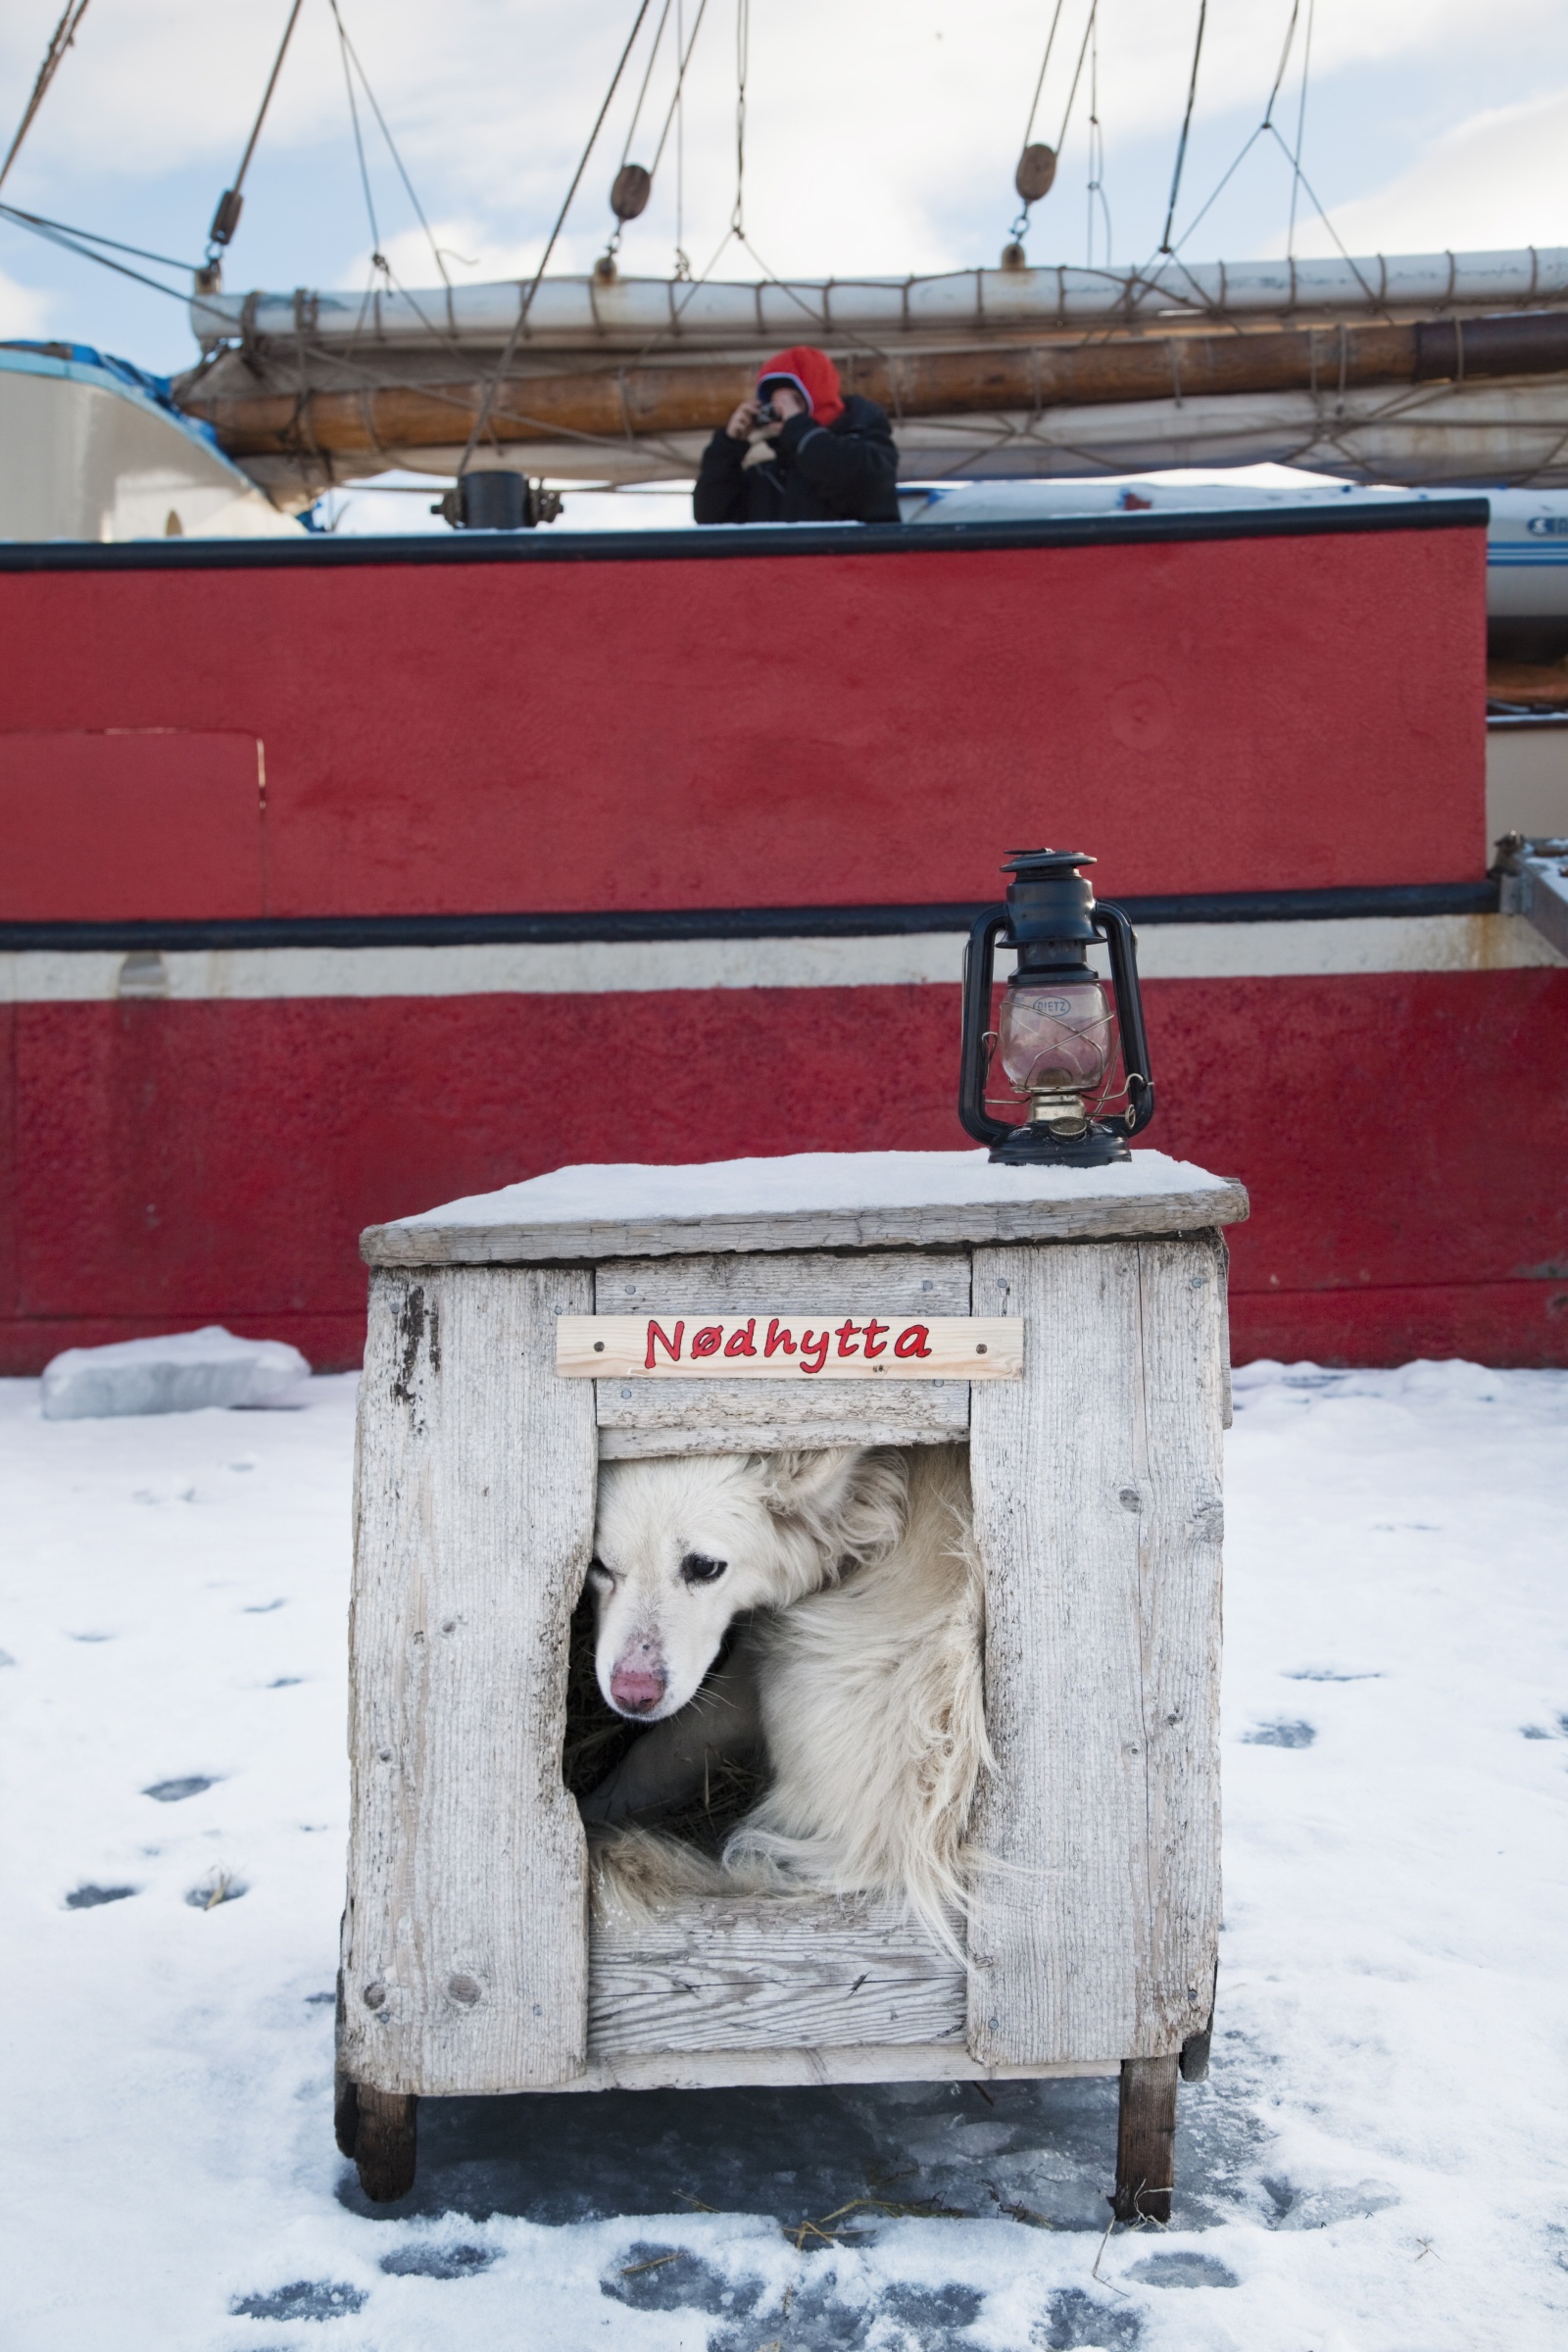 Сторожевая собака в будке около корабля